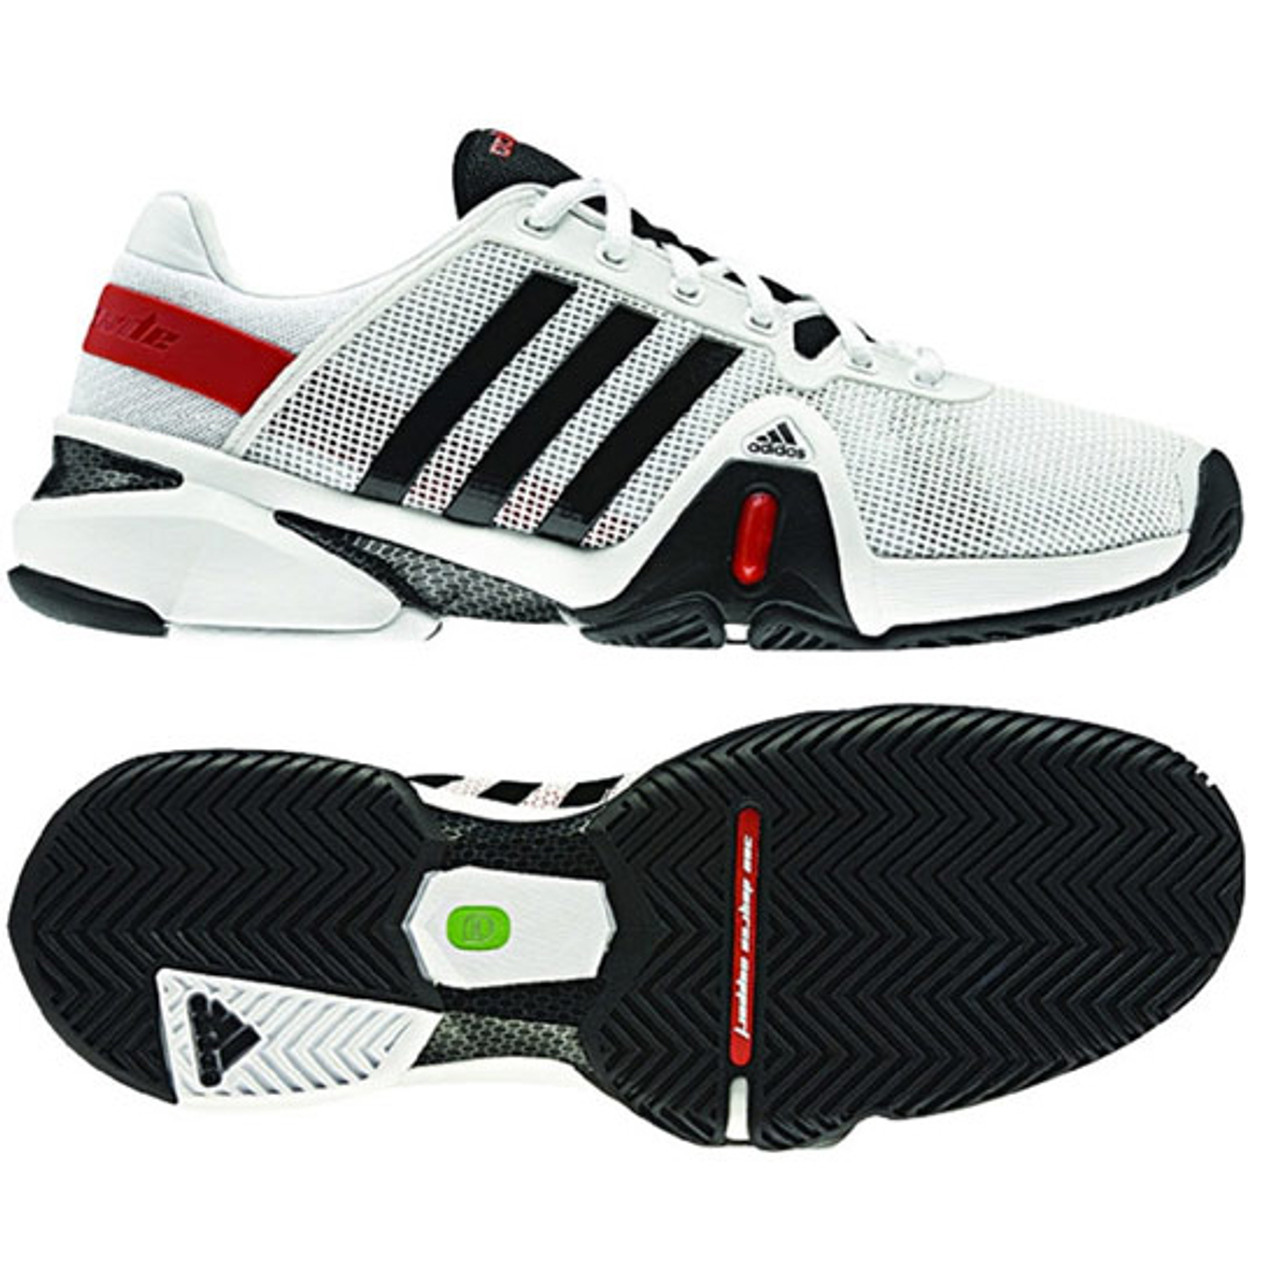 Adidas adipower 8 Black/White Mens Tennis Shoes - | Discount Adidas Men's Shoes & More - Shoolu.com Shoolu.com